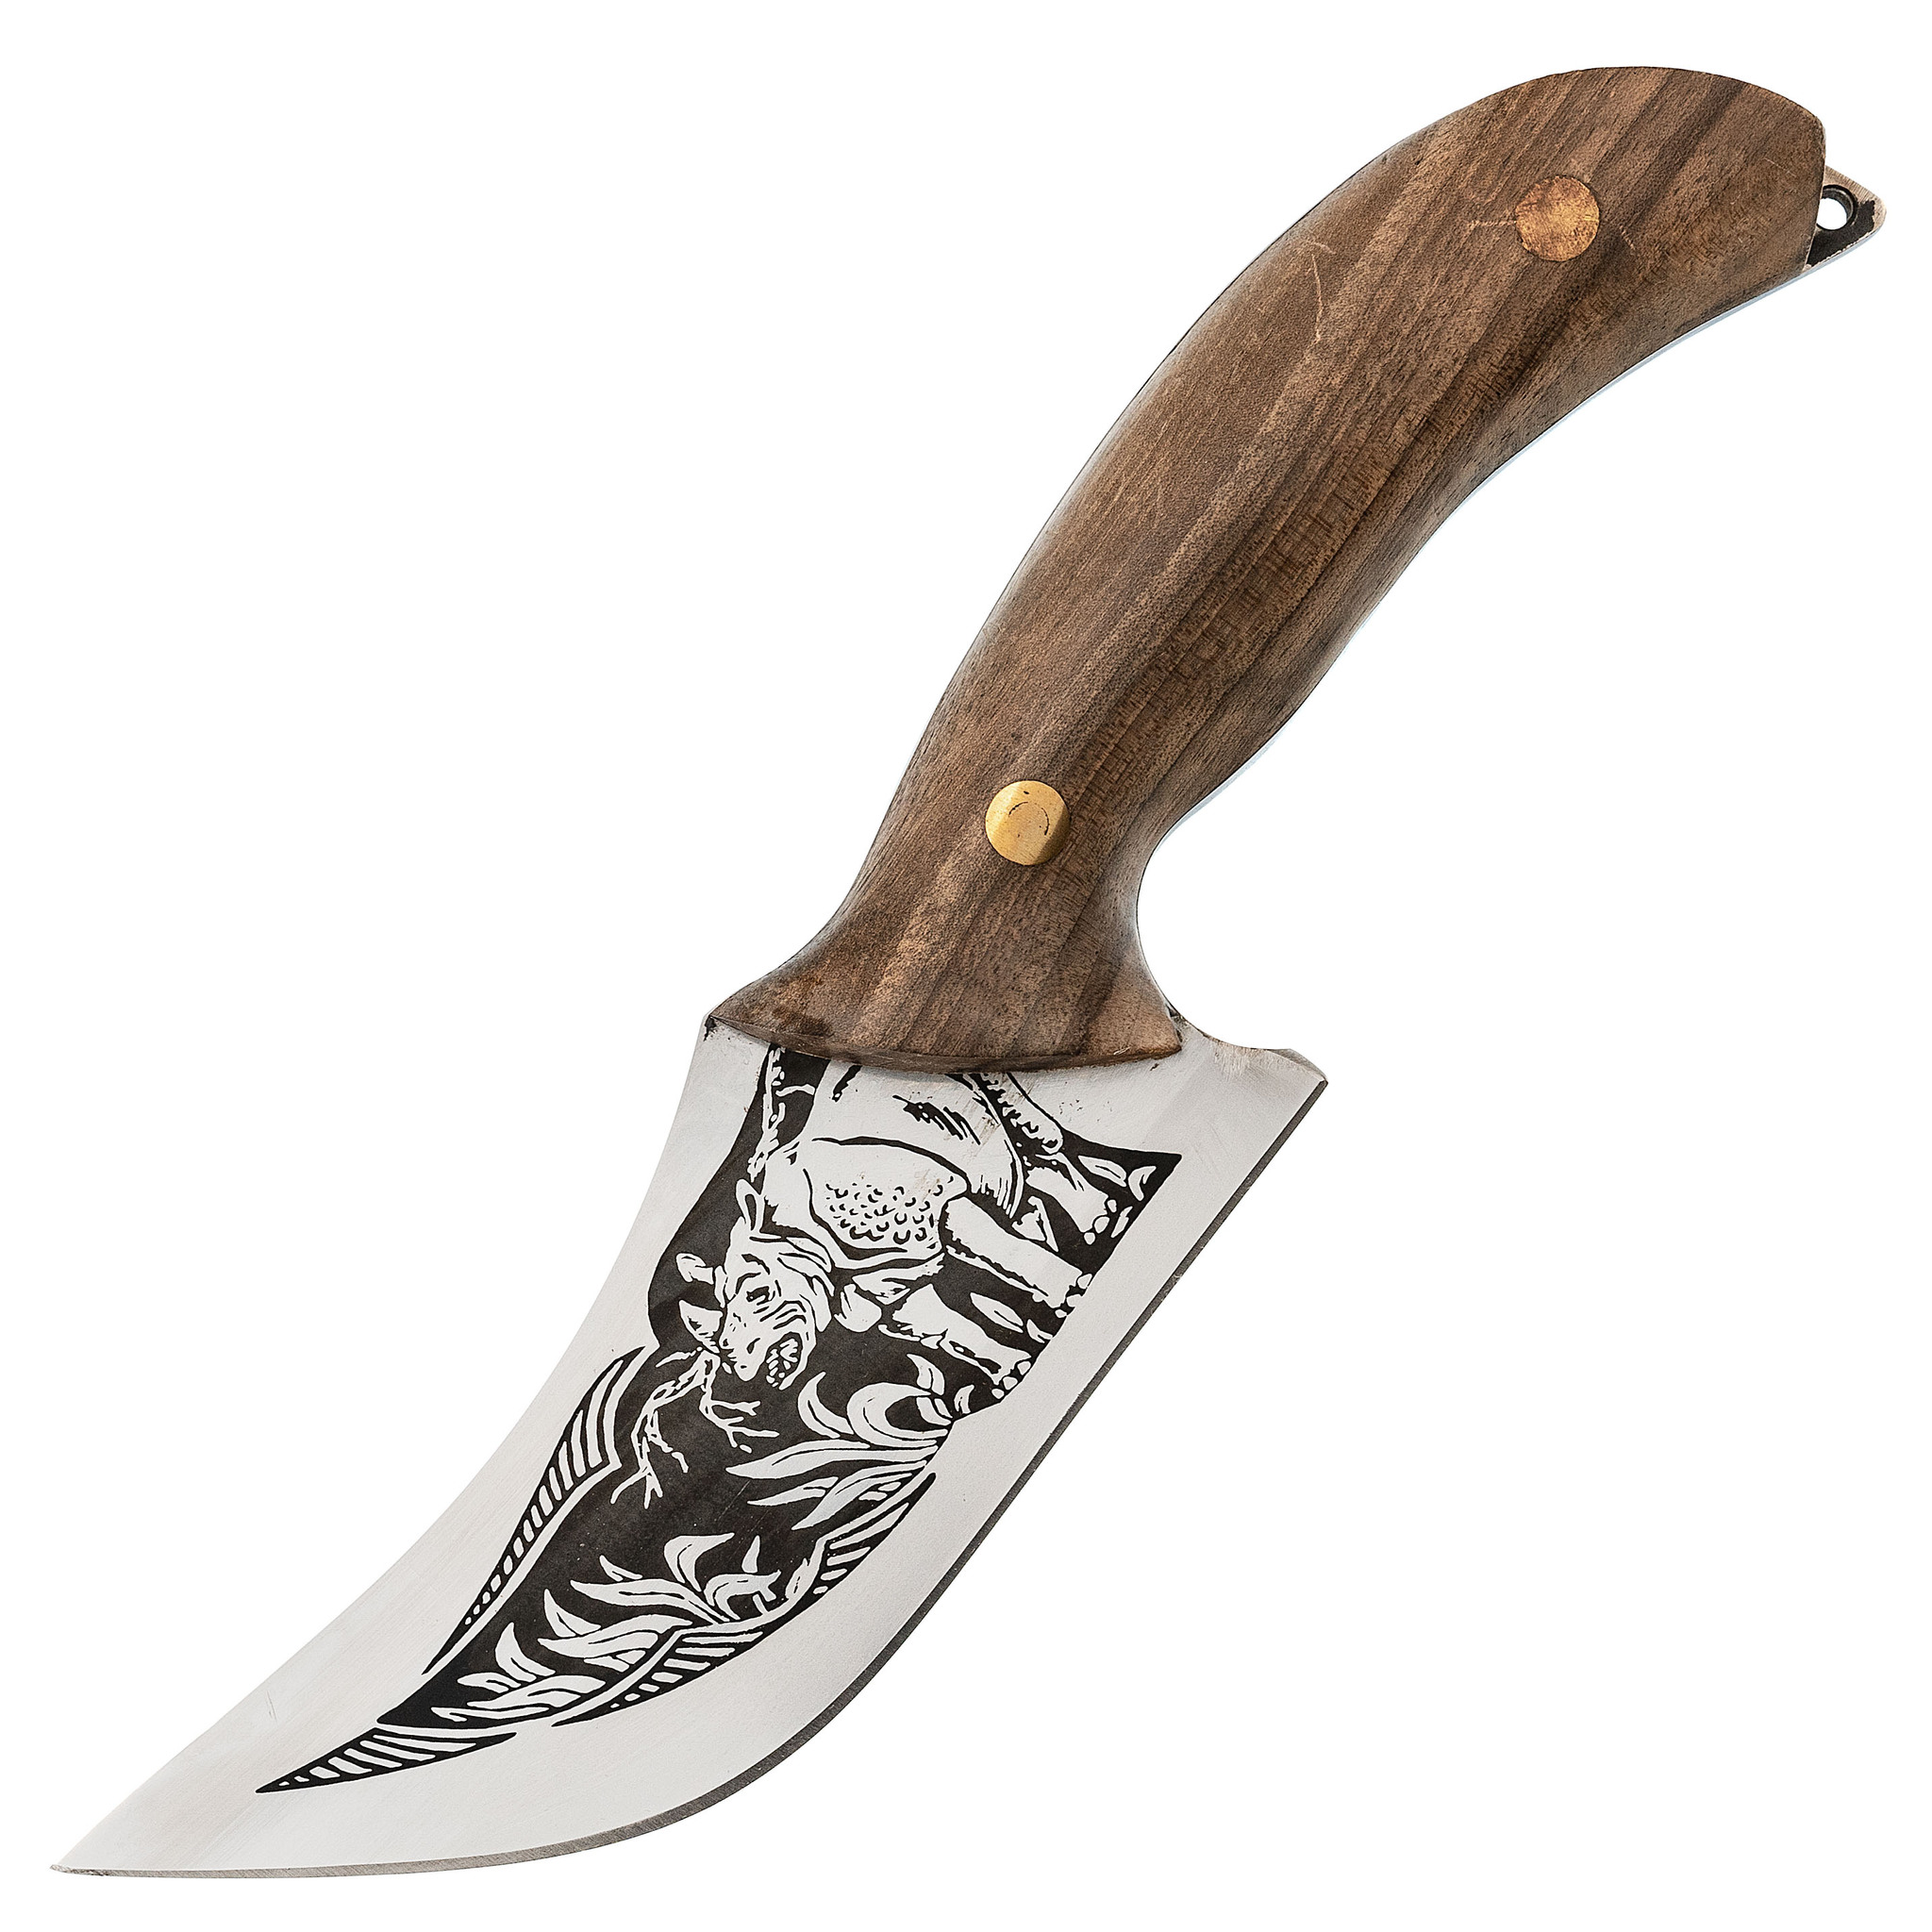  Осетр с кожаной рукоятью AUS-8, Кизляр -  нож с гравировкой .